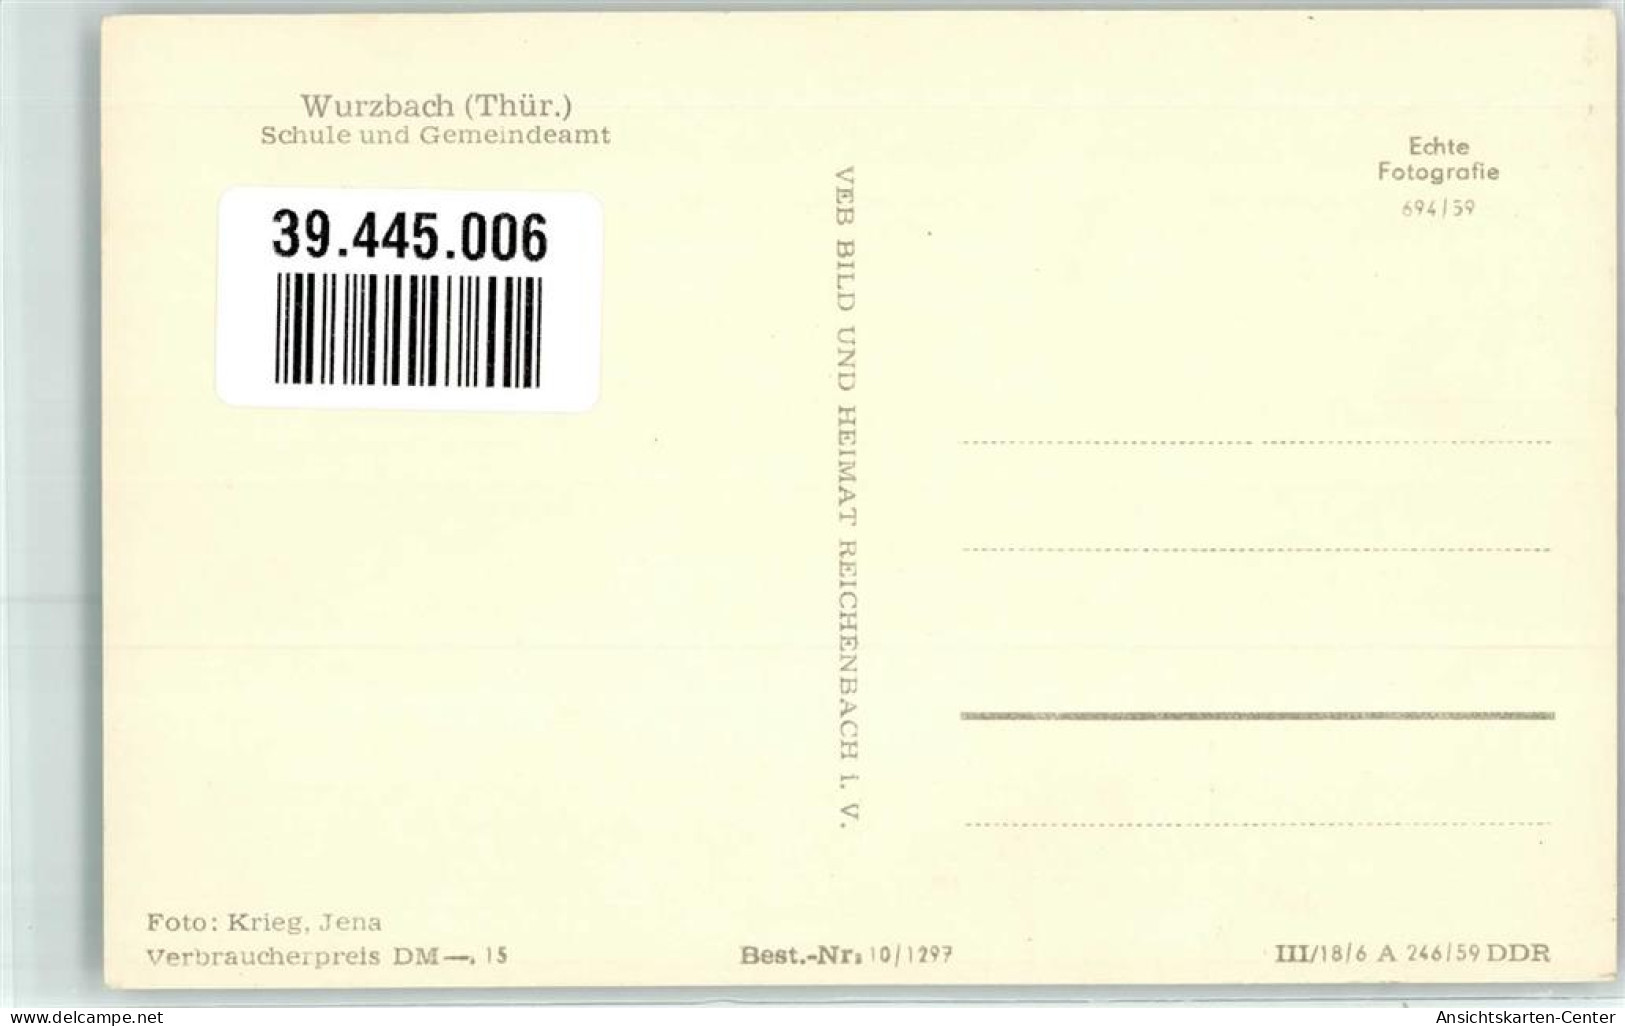 39445006 - Wurzbach - Wurzbach